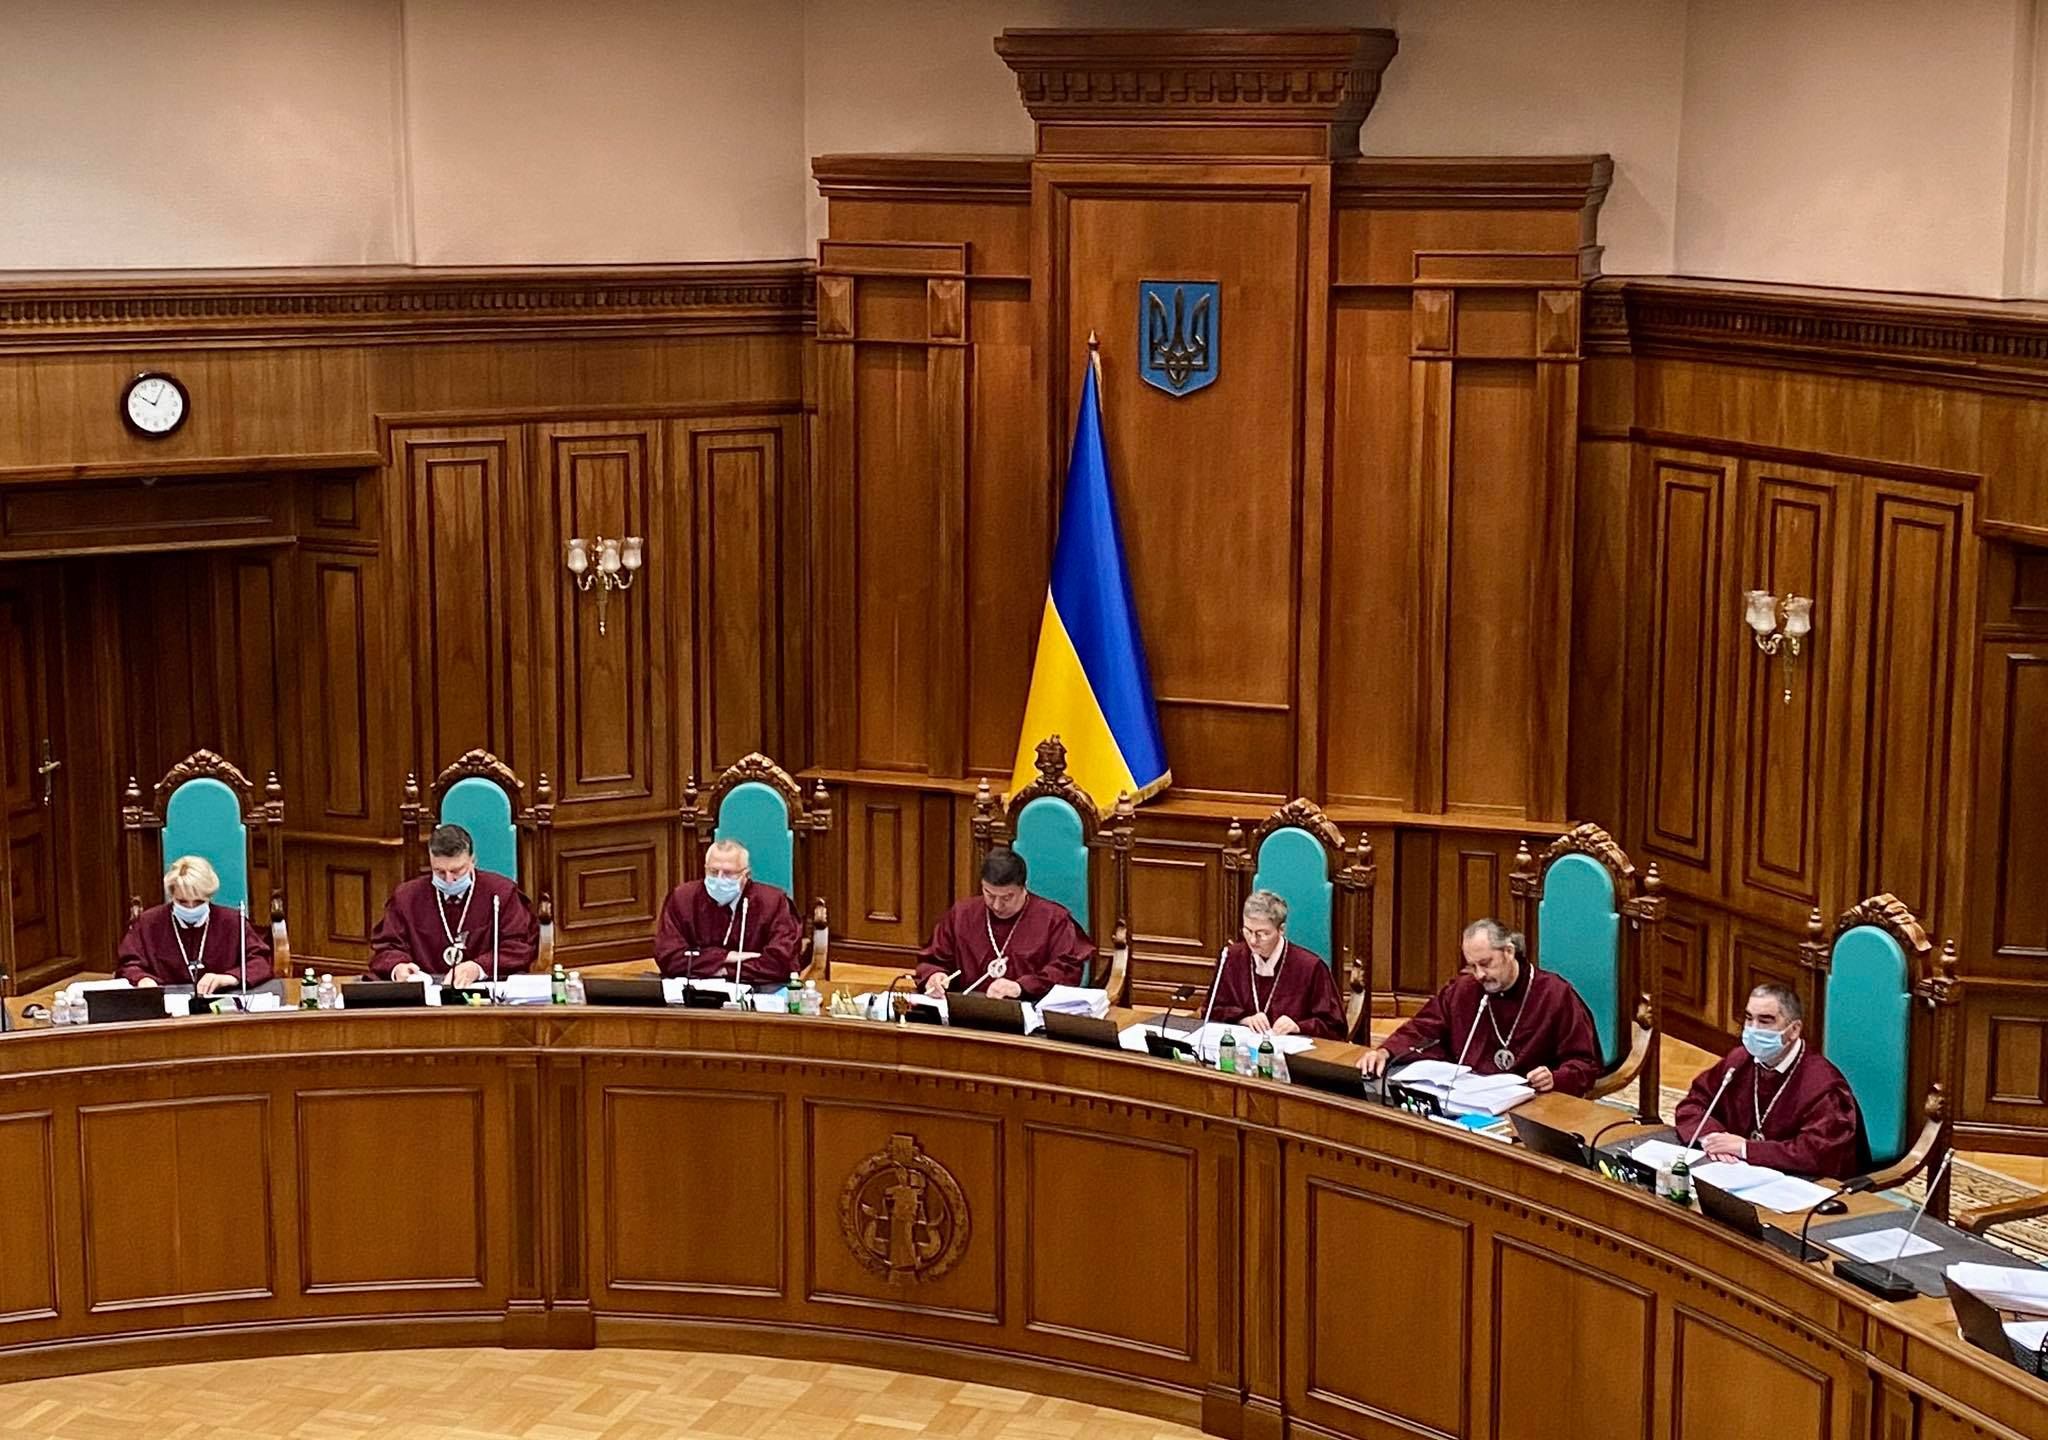 Судді виконали забаганку президента, – Рябошапка про рішення Конституційного Суду